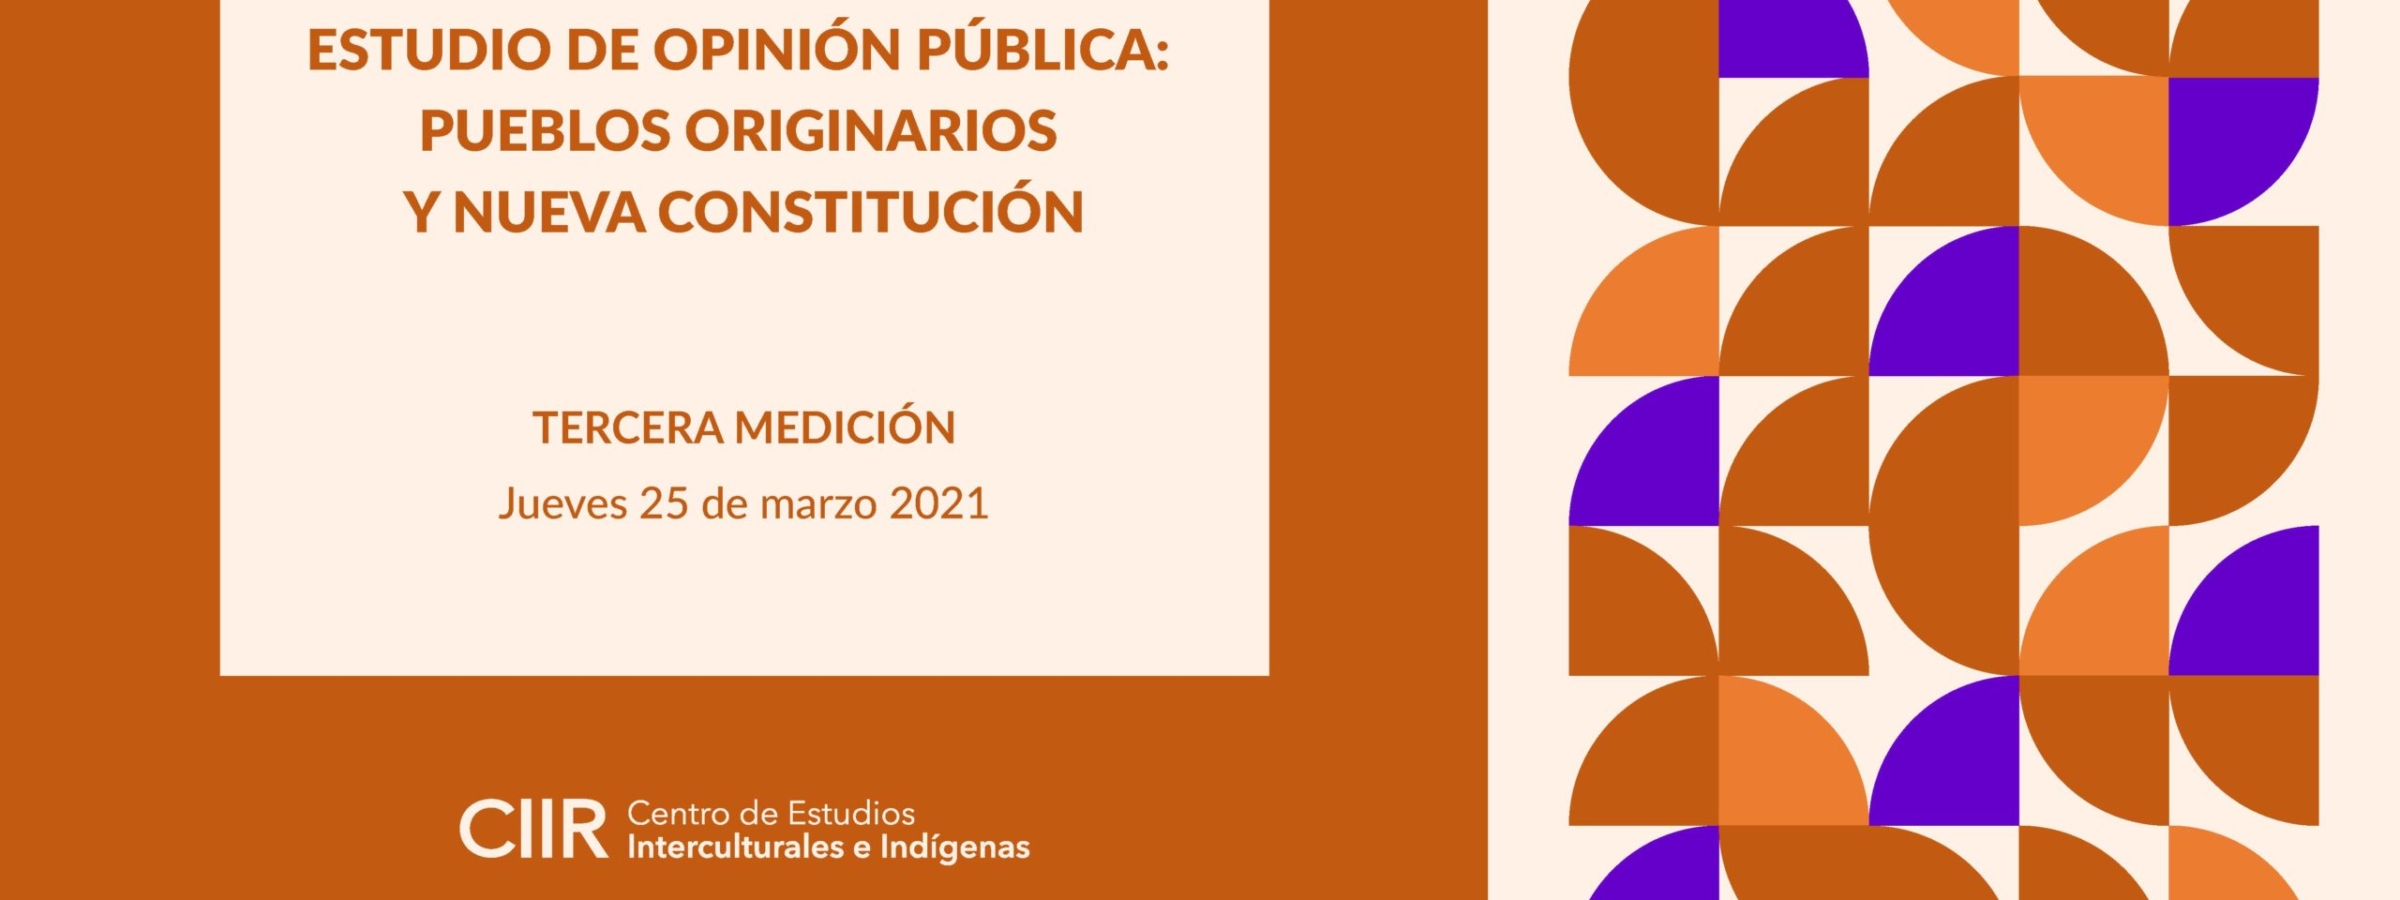 Estudio de Opinión Pública Pueblos Originarios y Nueva Constitución